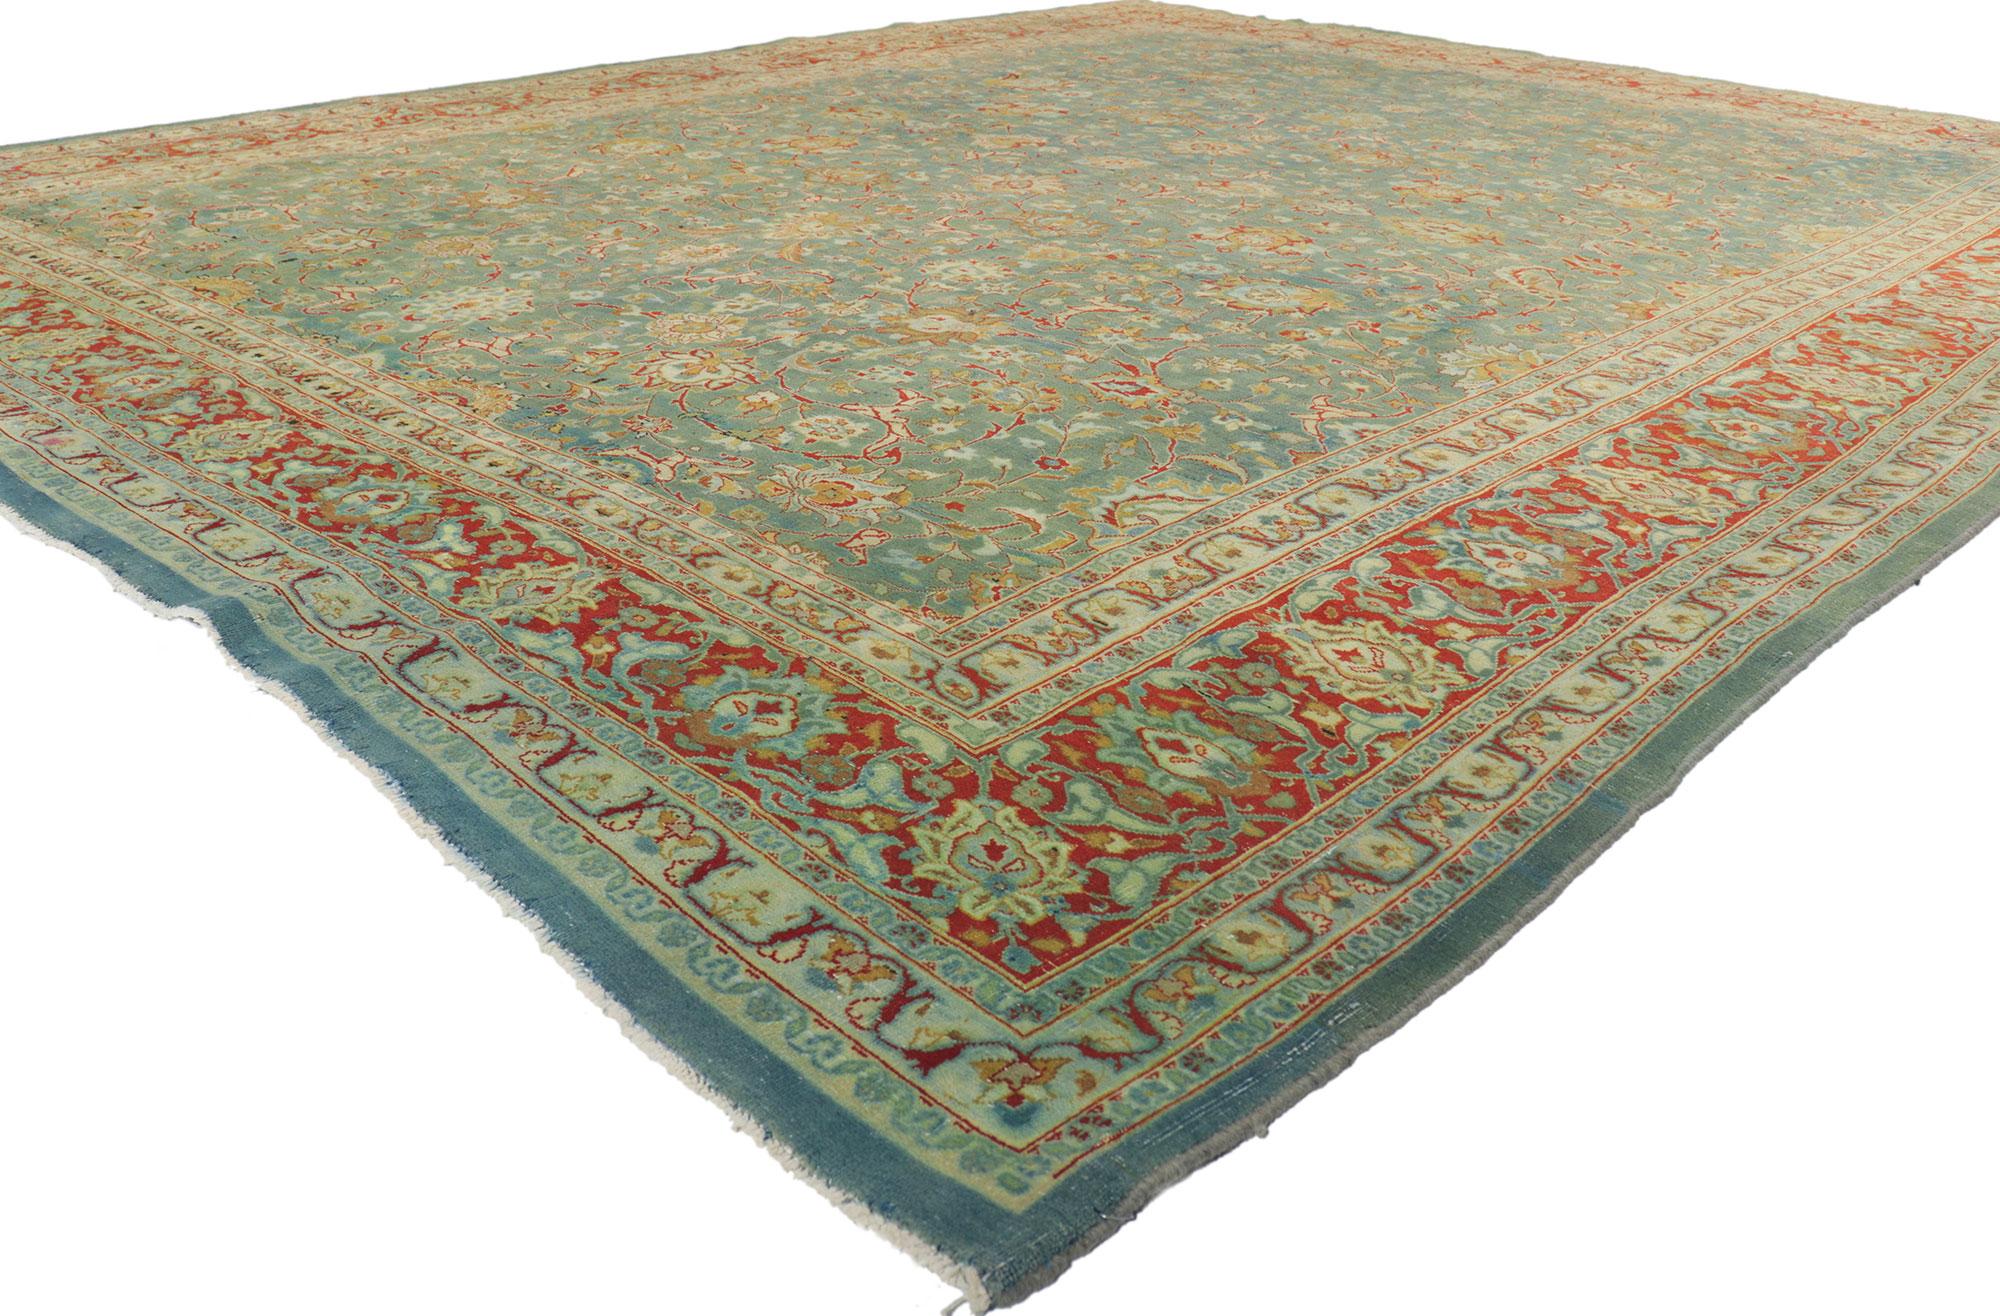 61178 Antiker persischer Täbriz-Teppich, 09'08 x 12'05. Dieser antike persische Täbriz-Teppich aus handgeknüpfter Wolle besticht durch seine mühelose Schönheit und sein zeitloses Design. Das antike, gewaschene Feld weist ein botanisches